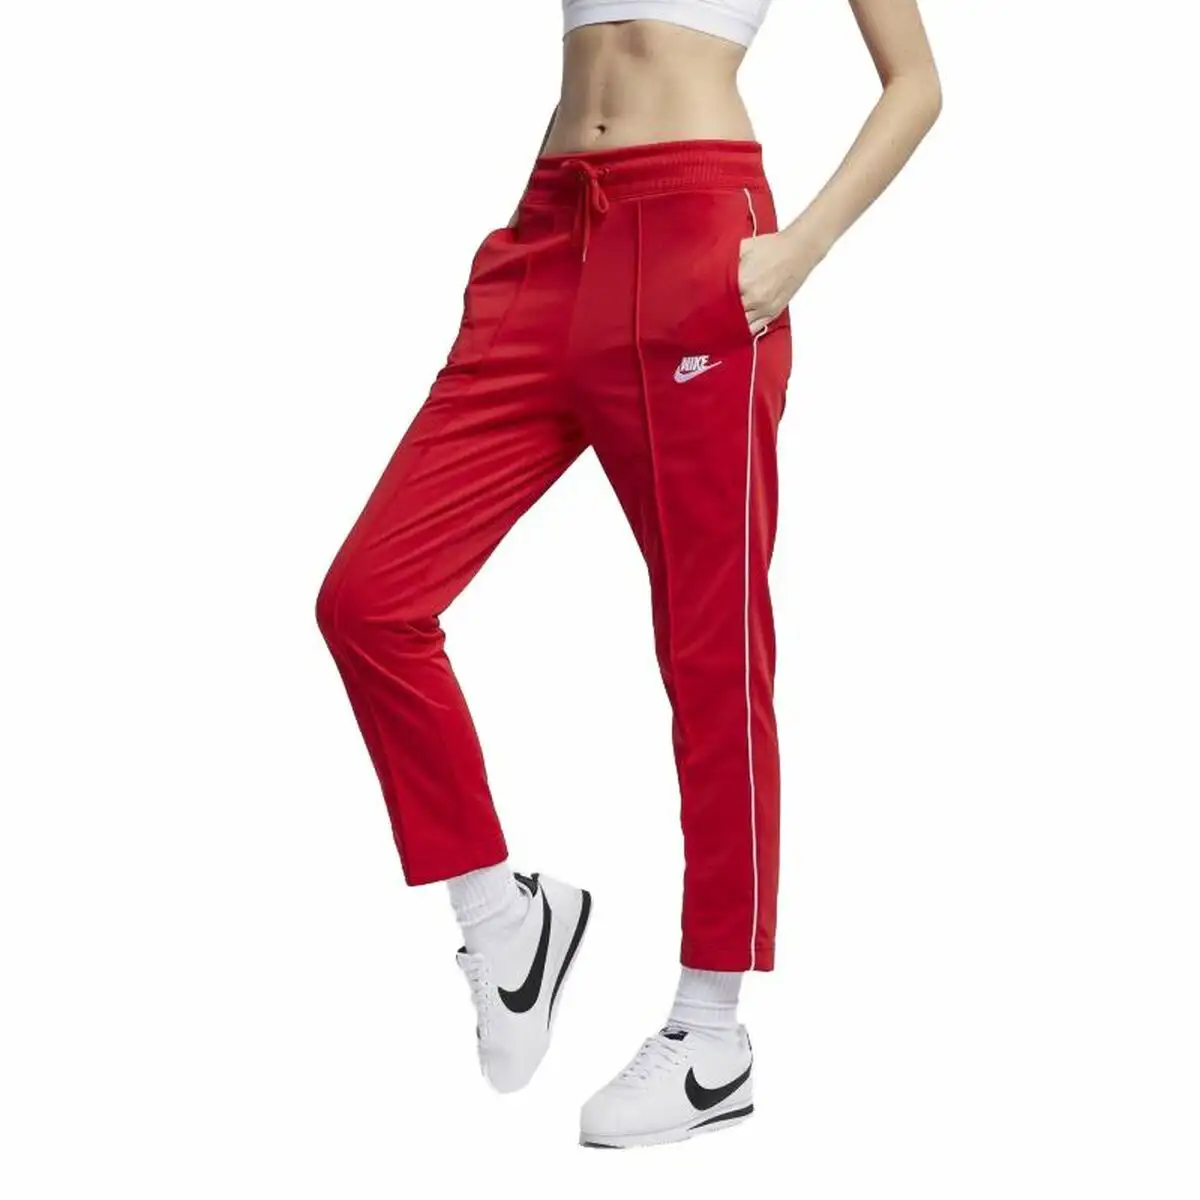 Pantalon de survetement pour adultes nike sportswear heritage femme rouge carmin_6690. DIAYTAR SENEGAL - Là où Chaque Produit est une Trouvaille Unique. Découvrez notre boutique en ligne et trouvez des articles qui vous distinguent par leur originalité.